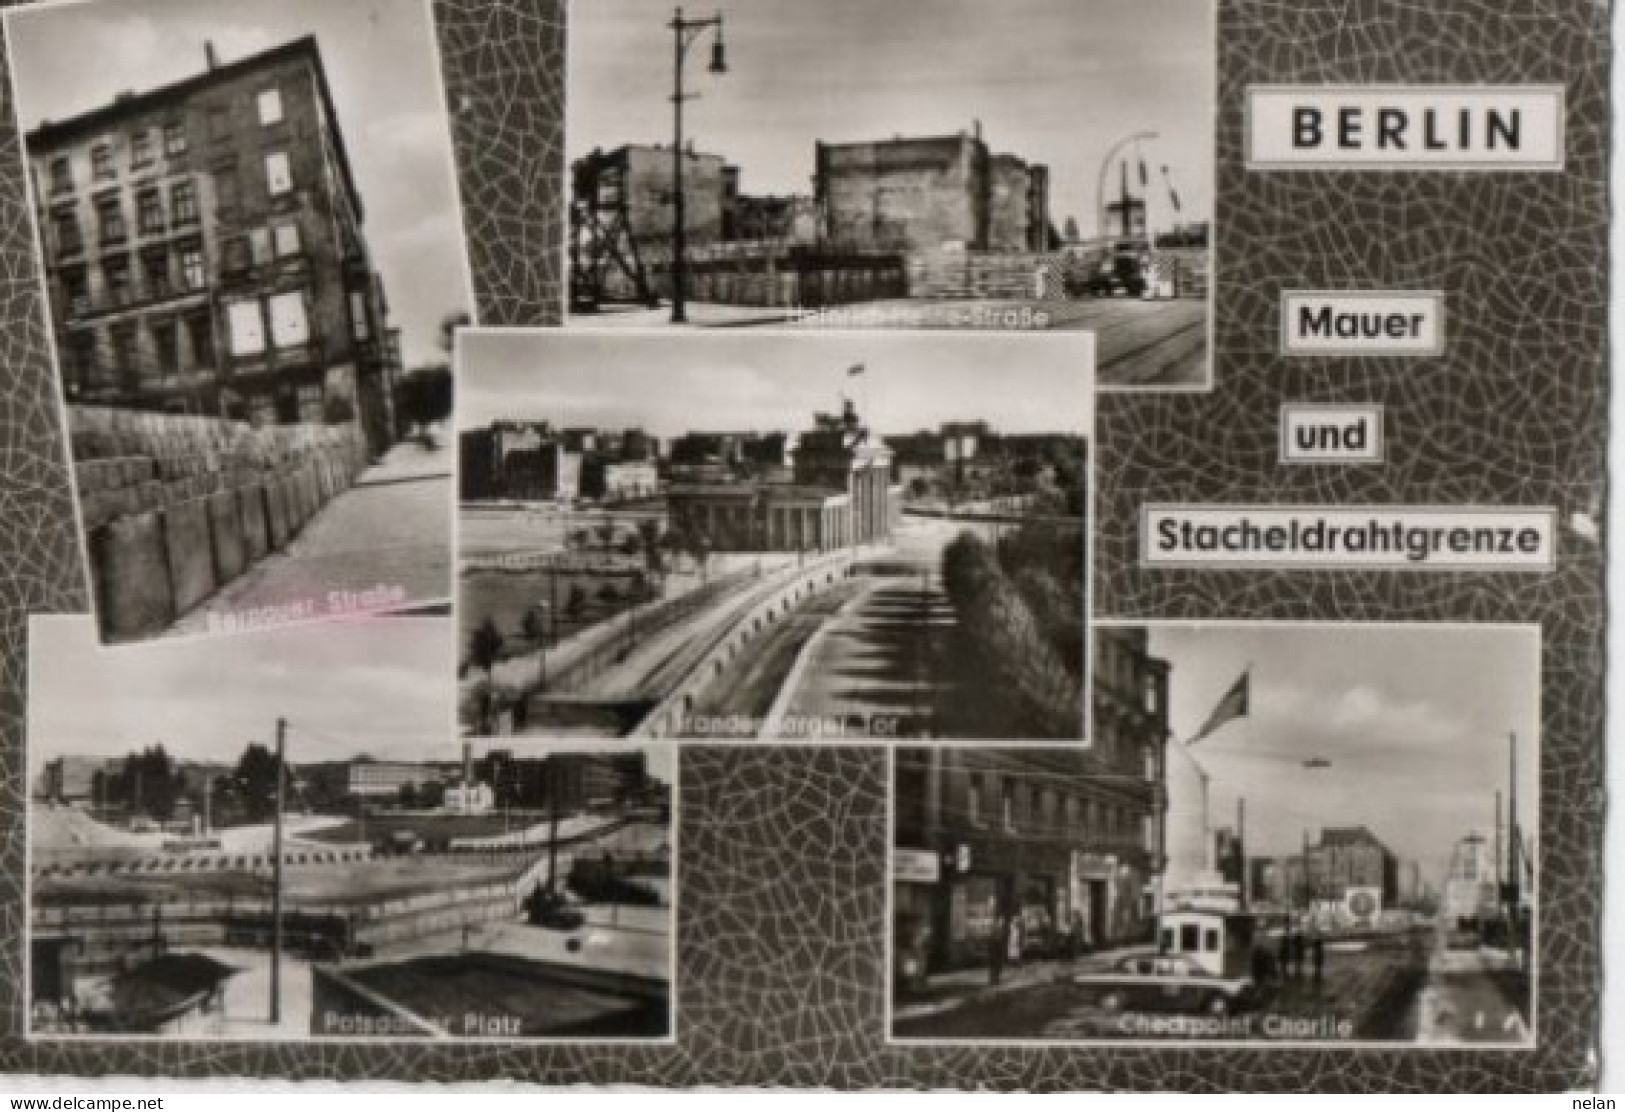 BERLIN - MAUER UND STACHELDRAHTGRENZE - Berlijnse Muur